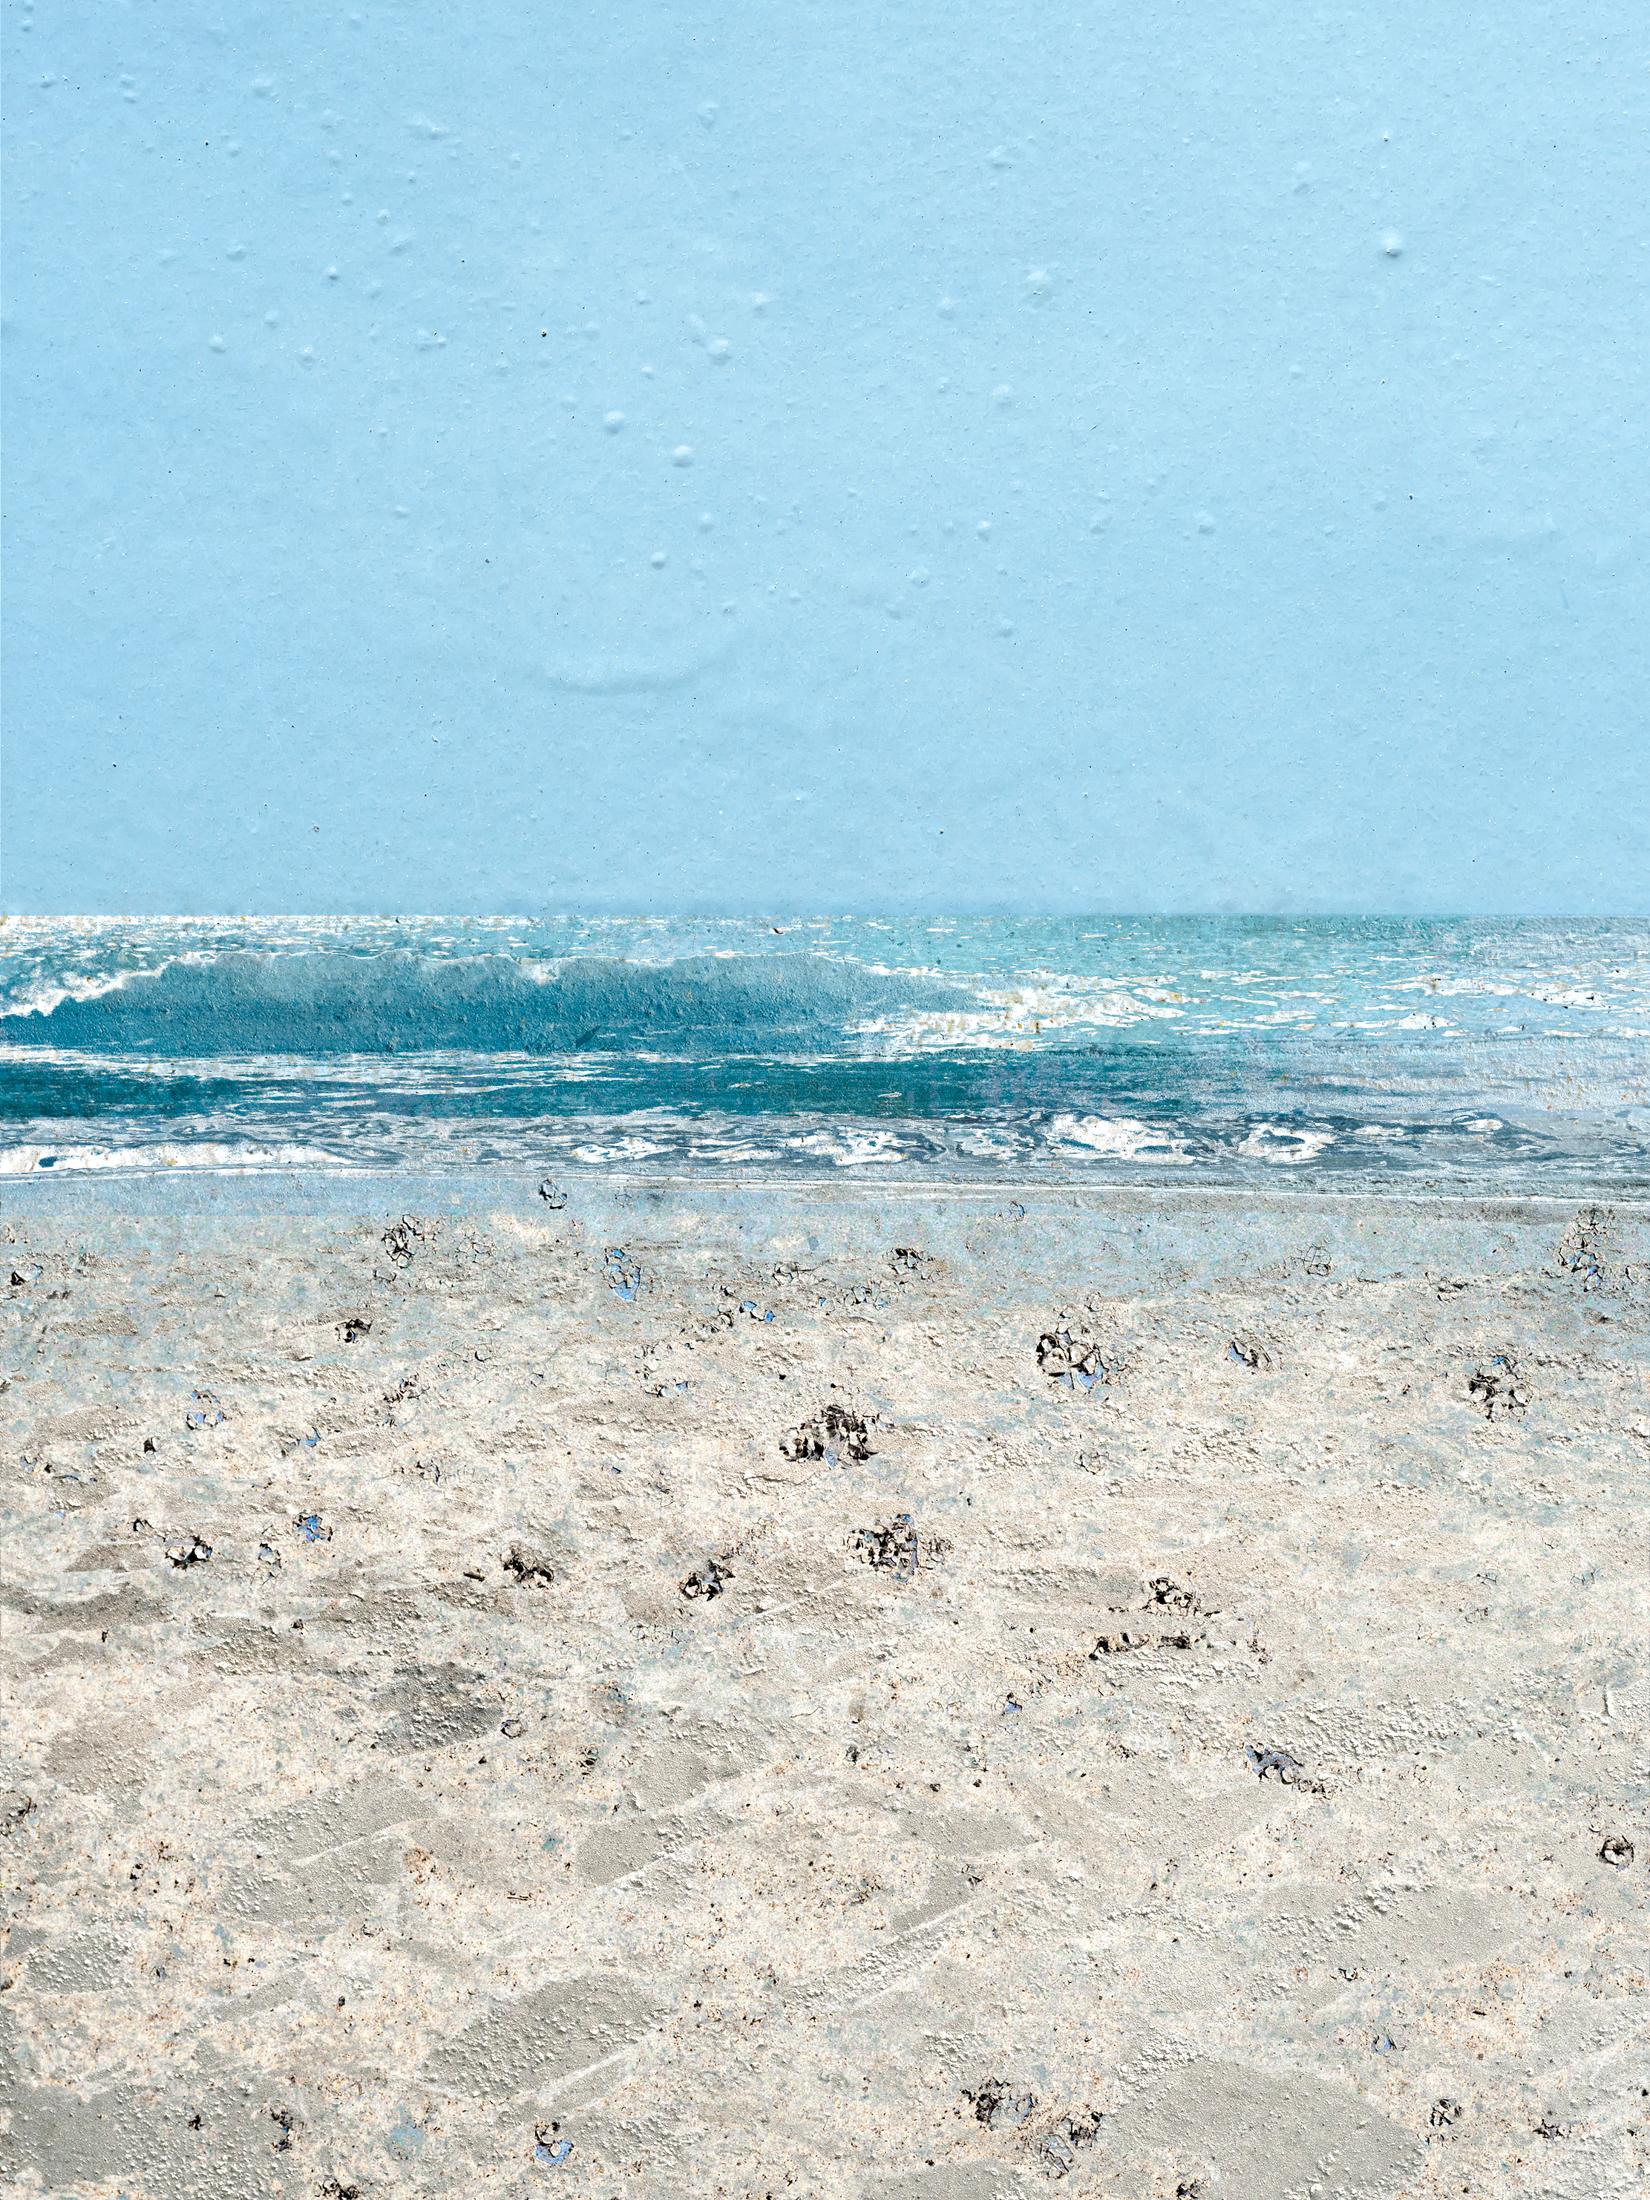 Landscape Photograph Jennifer McKinnon - Produit non conventionnel : Mèvre de plage - photo composite, paysage de plage, environnement